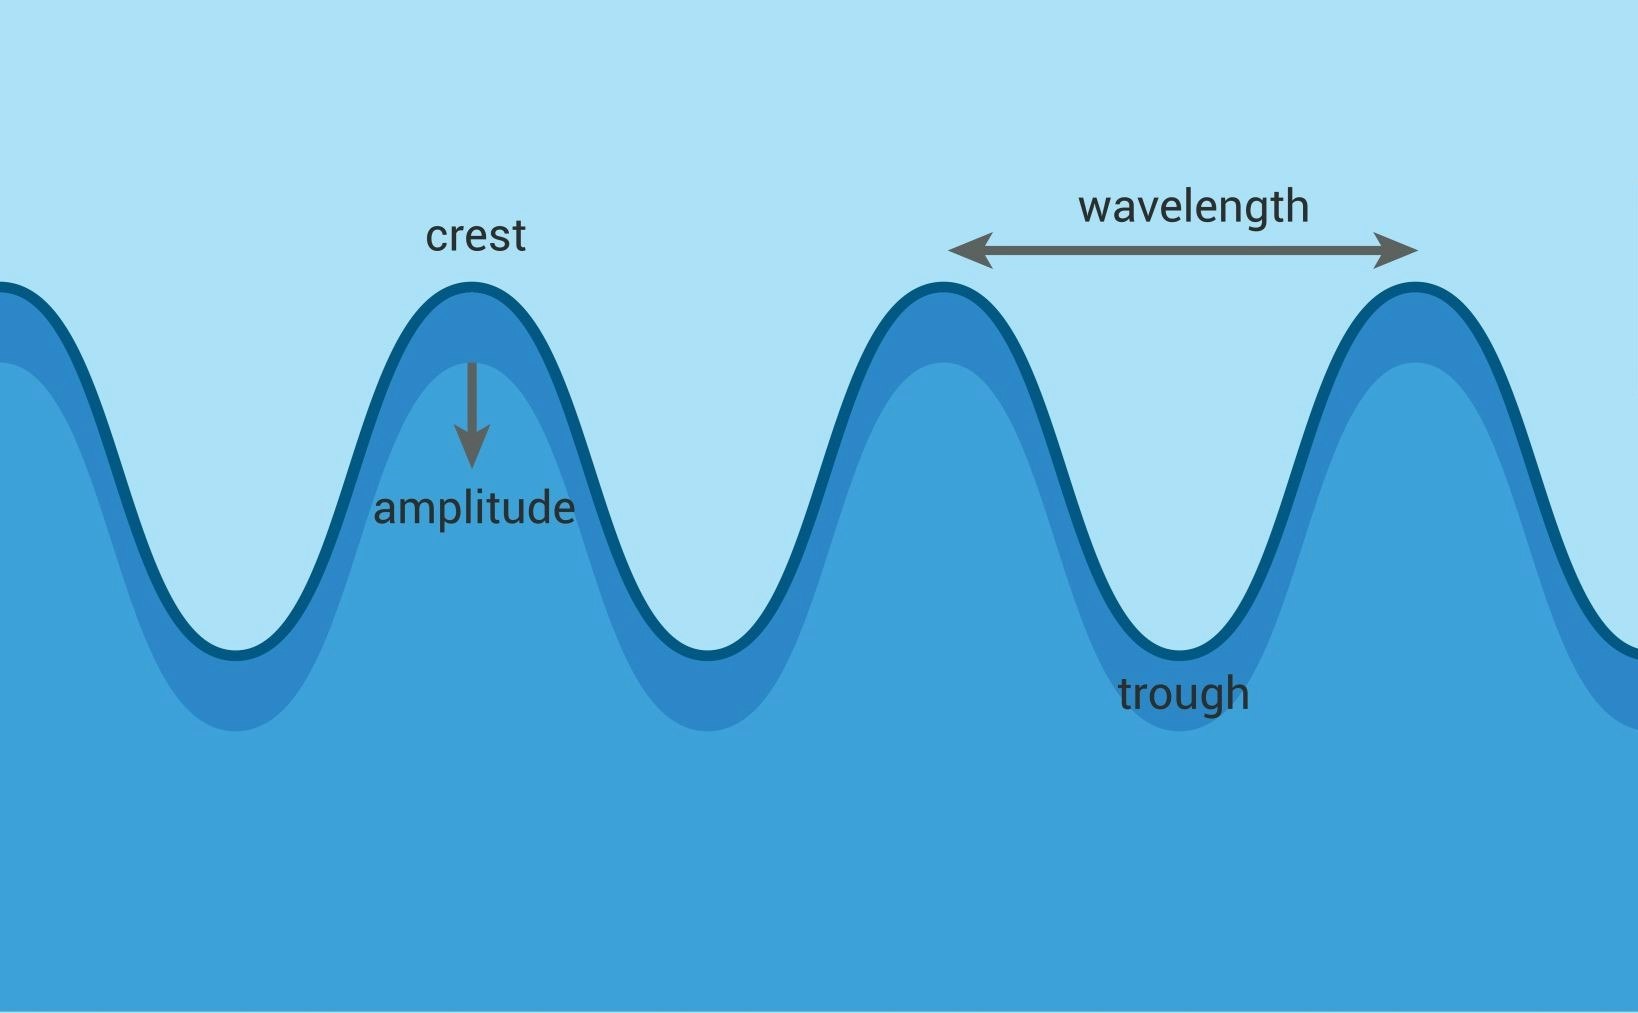 Grafika znázorňujúca vlastnosti vĺn na mori